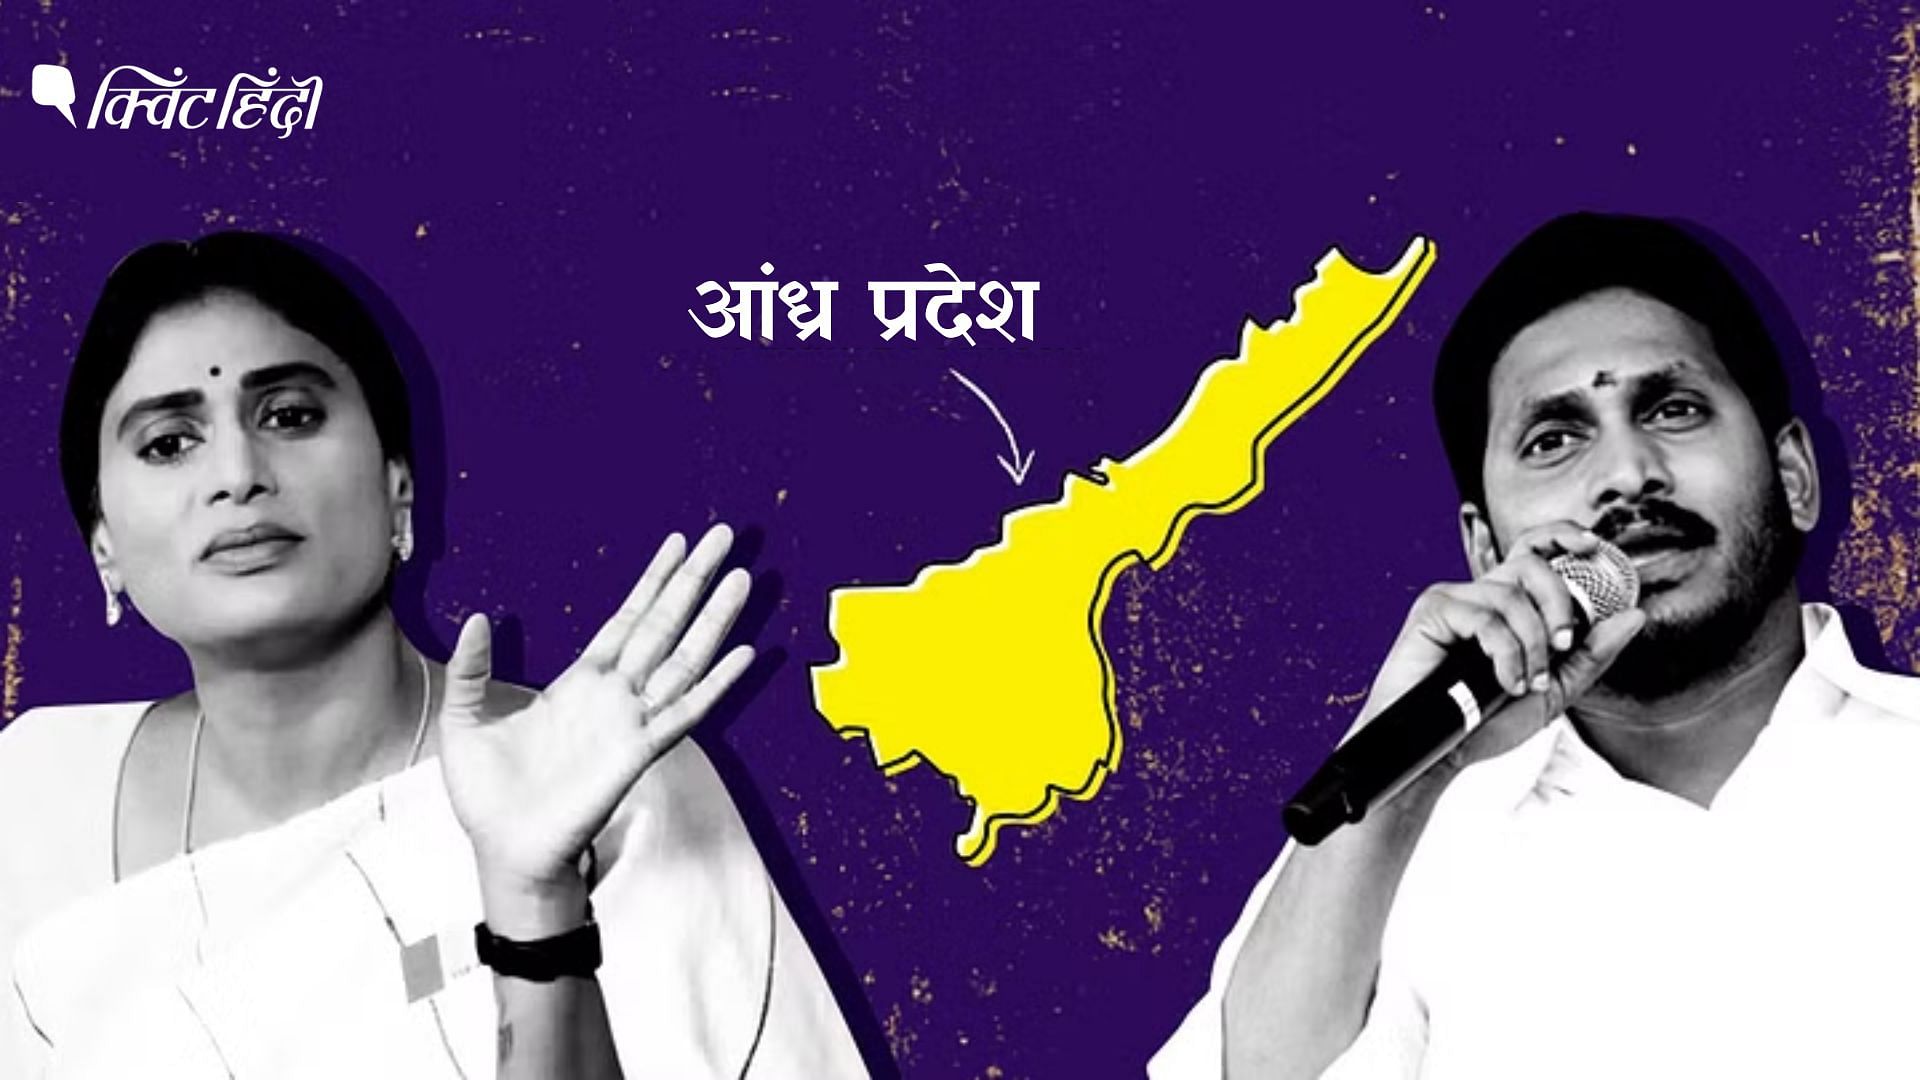 <div class="paragraphs"><p>YS शर्मिला के नेतृत्व में क्या कांग्रेस आंध्र प्रदेश के चुनावी नतीजों पर असर डाल सकती है?</p></div>